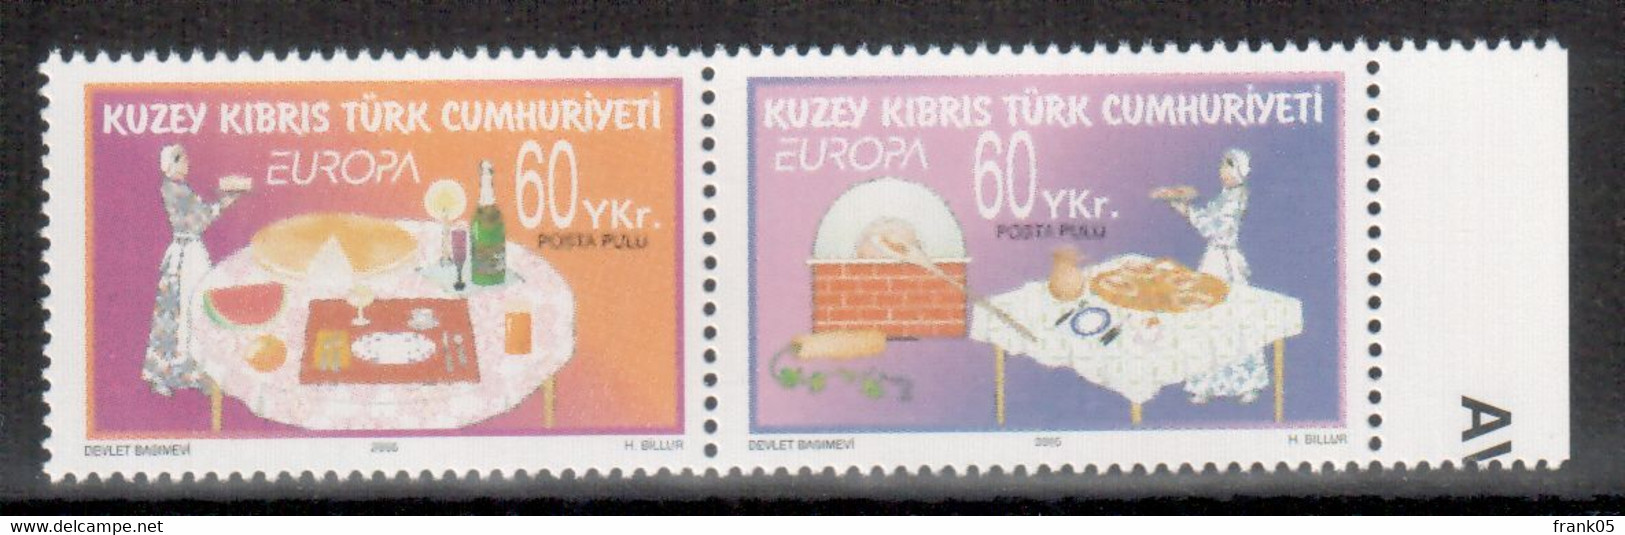 Turkish Republic Of Northern Cyprus / Türkisch-Zypern / Chypre Turc 2005 Pair/Paar EUROPA ** - 2005